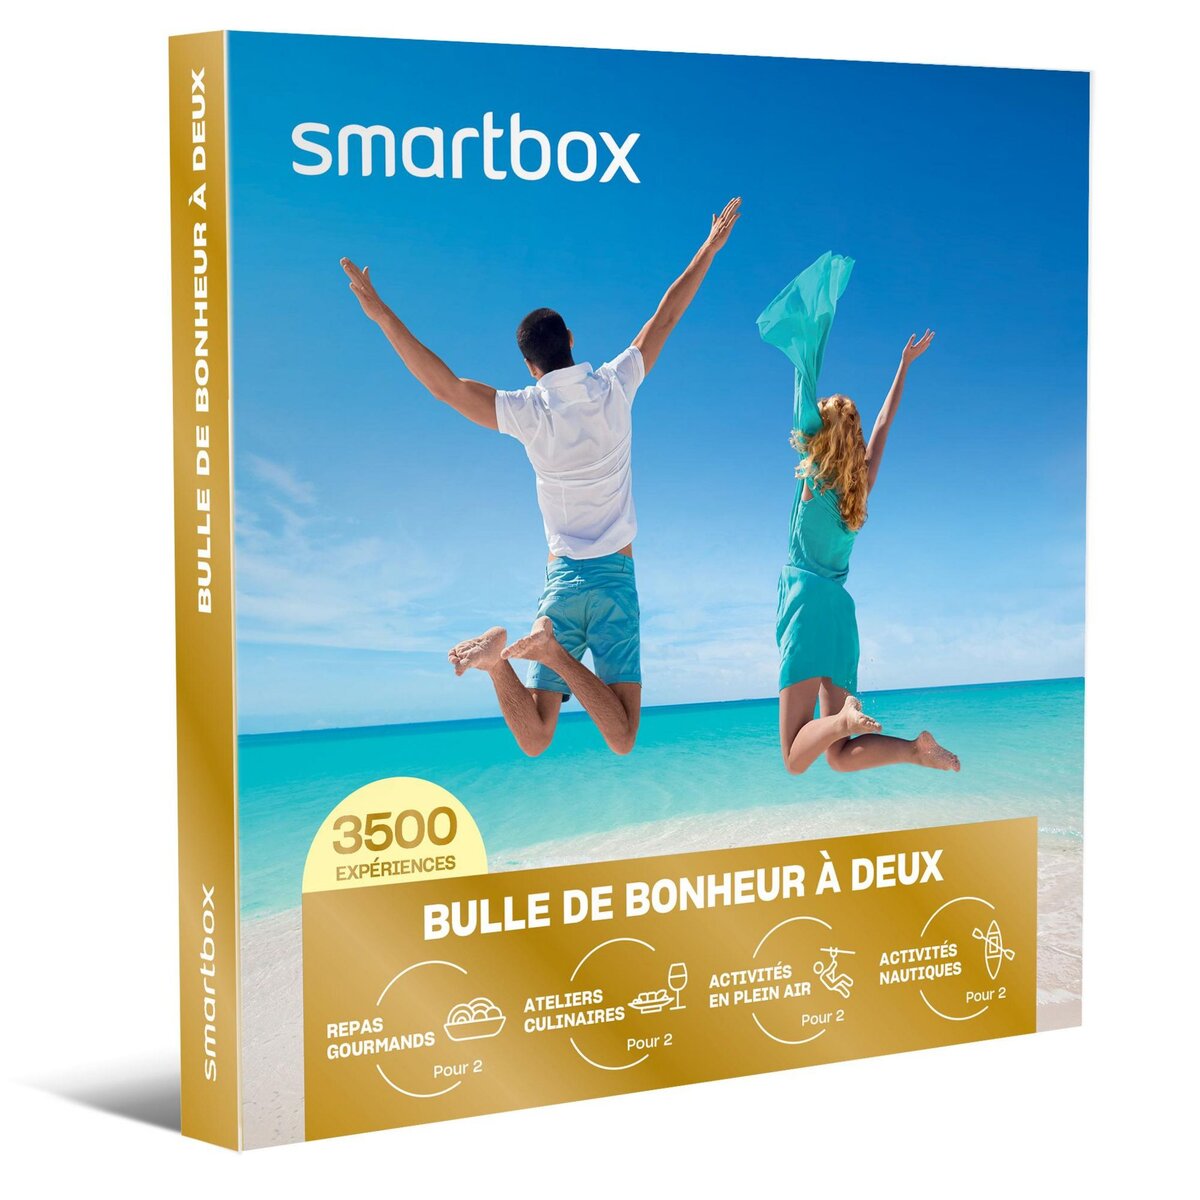 Smartbox Bulle de bonheur à deux - Coffret Cadeau Multi-thèmes